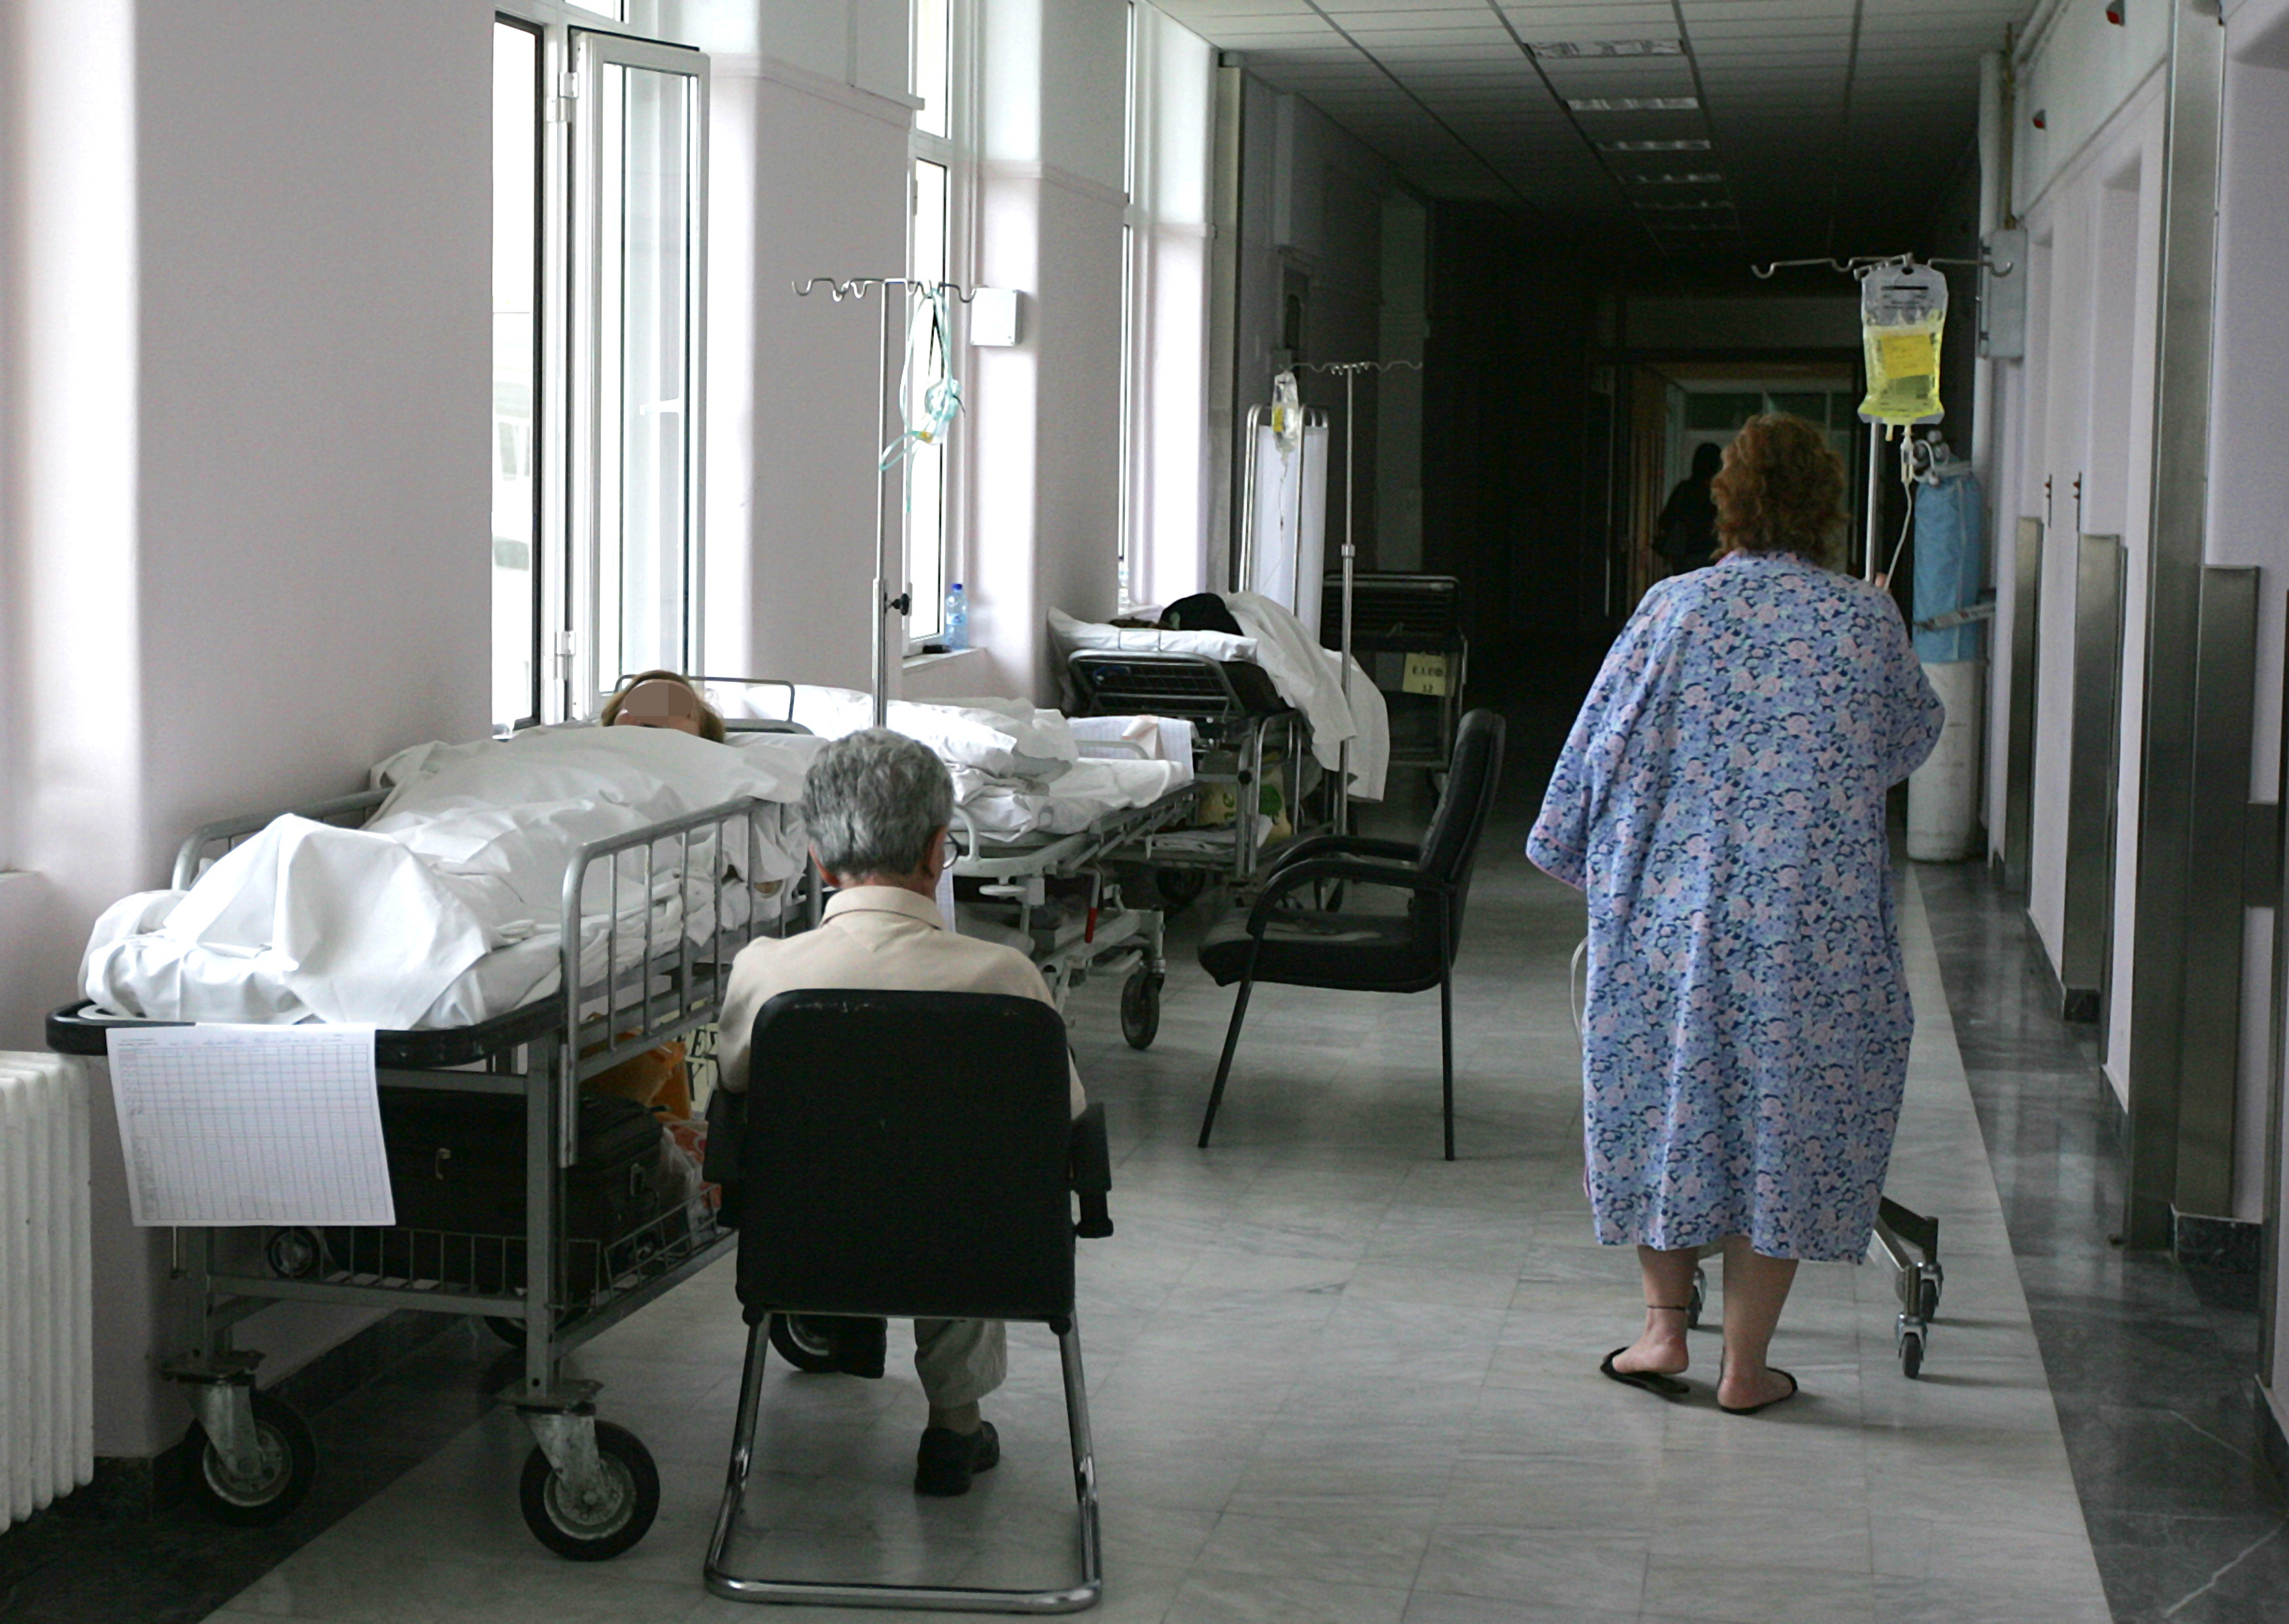 Τι λέει ο ΟΑΕΔ για τη μισθοδοσία των εργαζόμενων στα νοσοκομεία